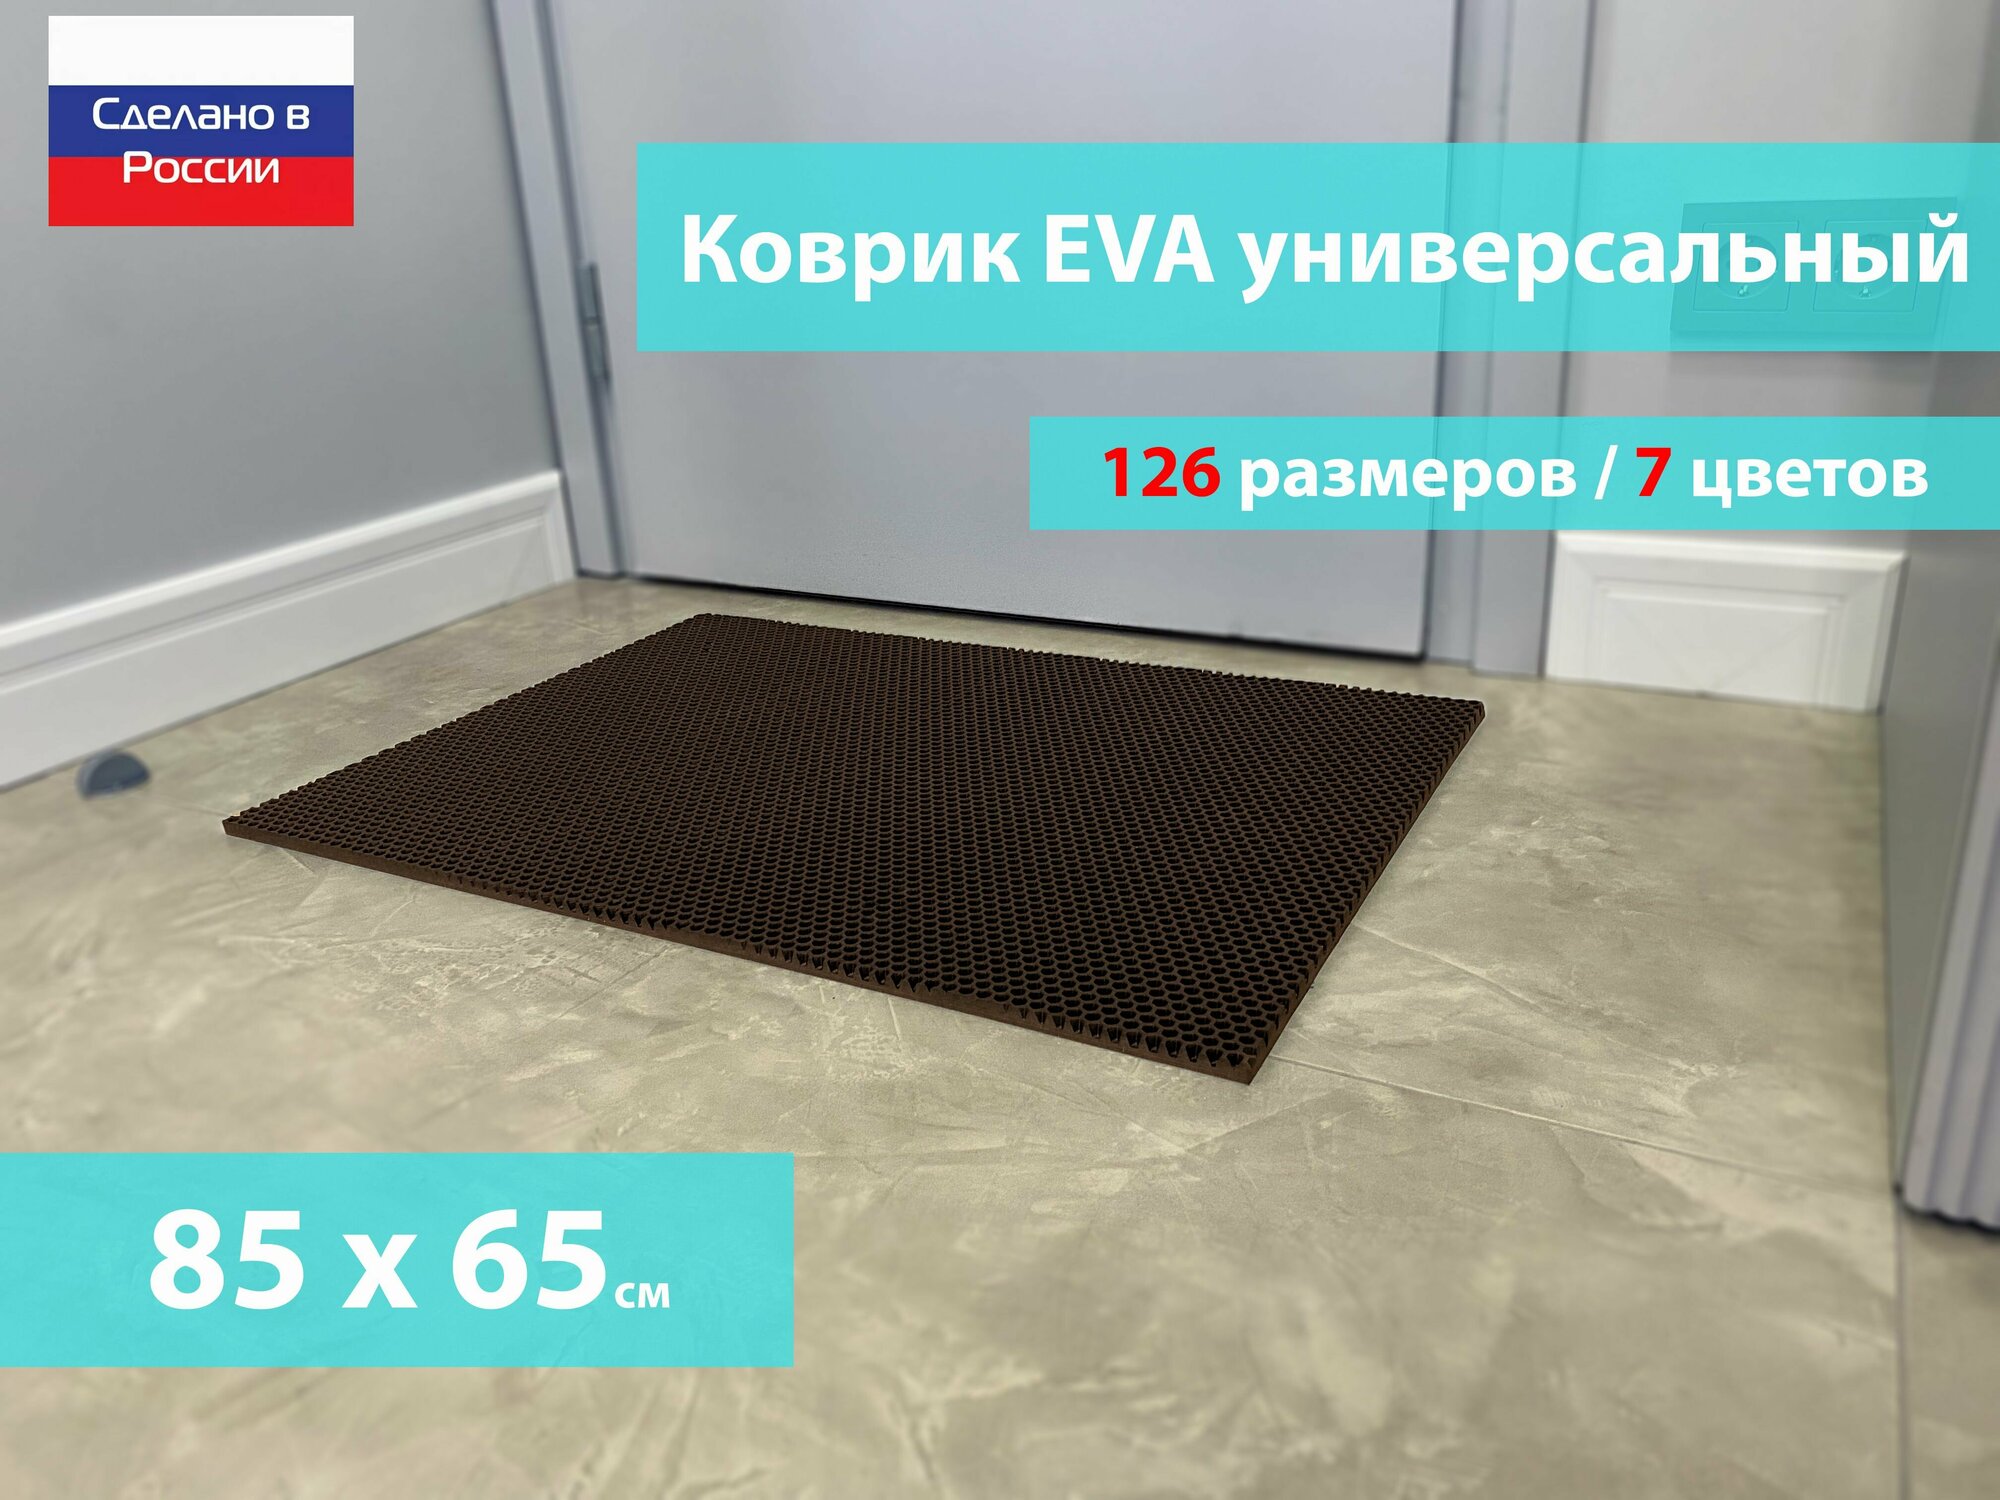 Коврик придверный EVA (ЕВА) в прихожую для обуви / Ковер ЭВА на пол перед дверью/ коричневый / размер 85 х 65 см